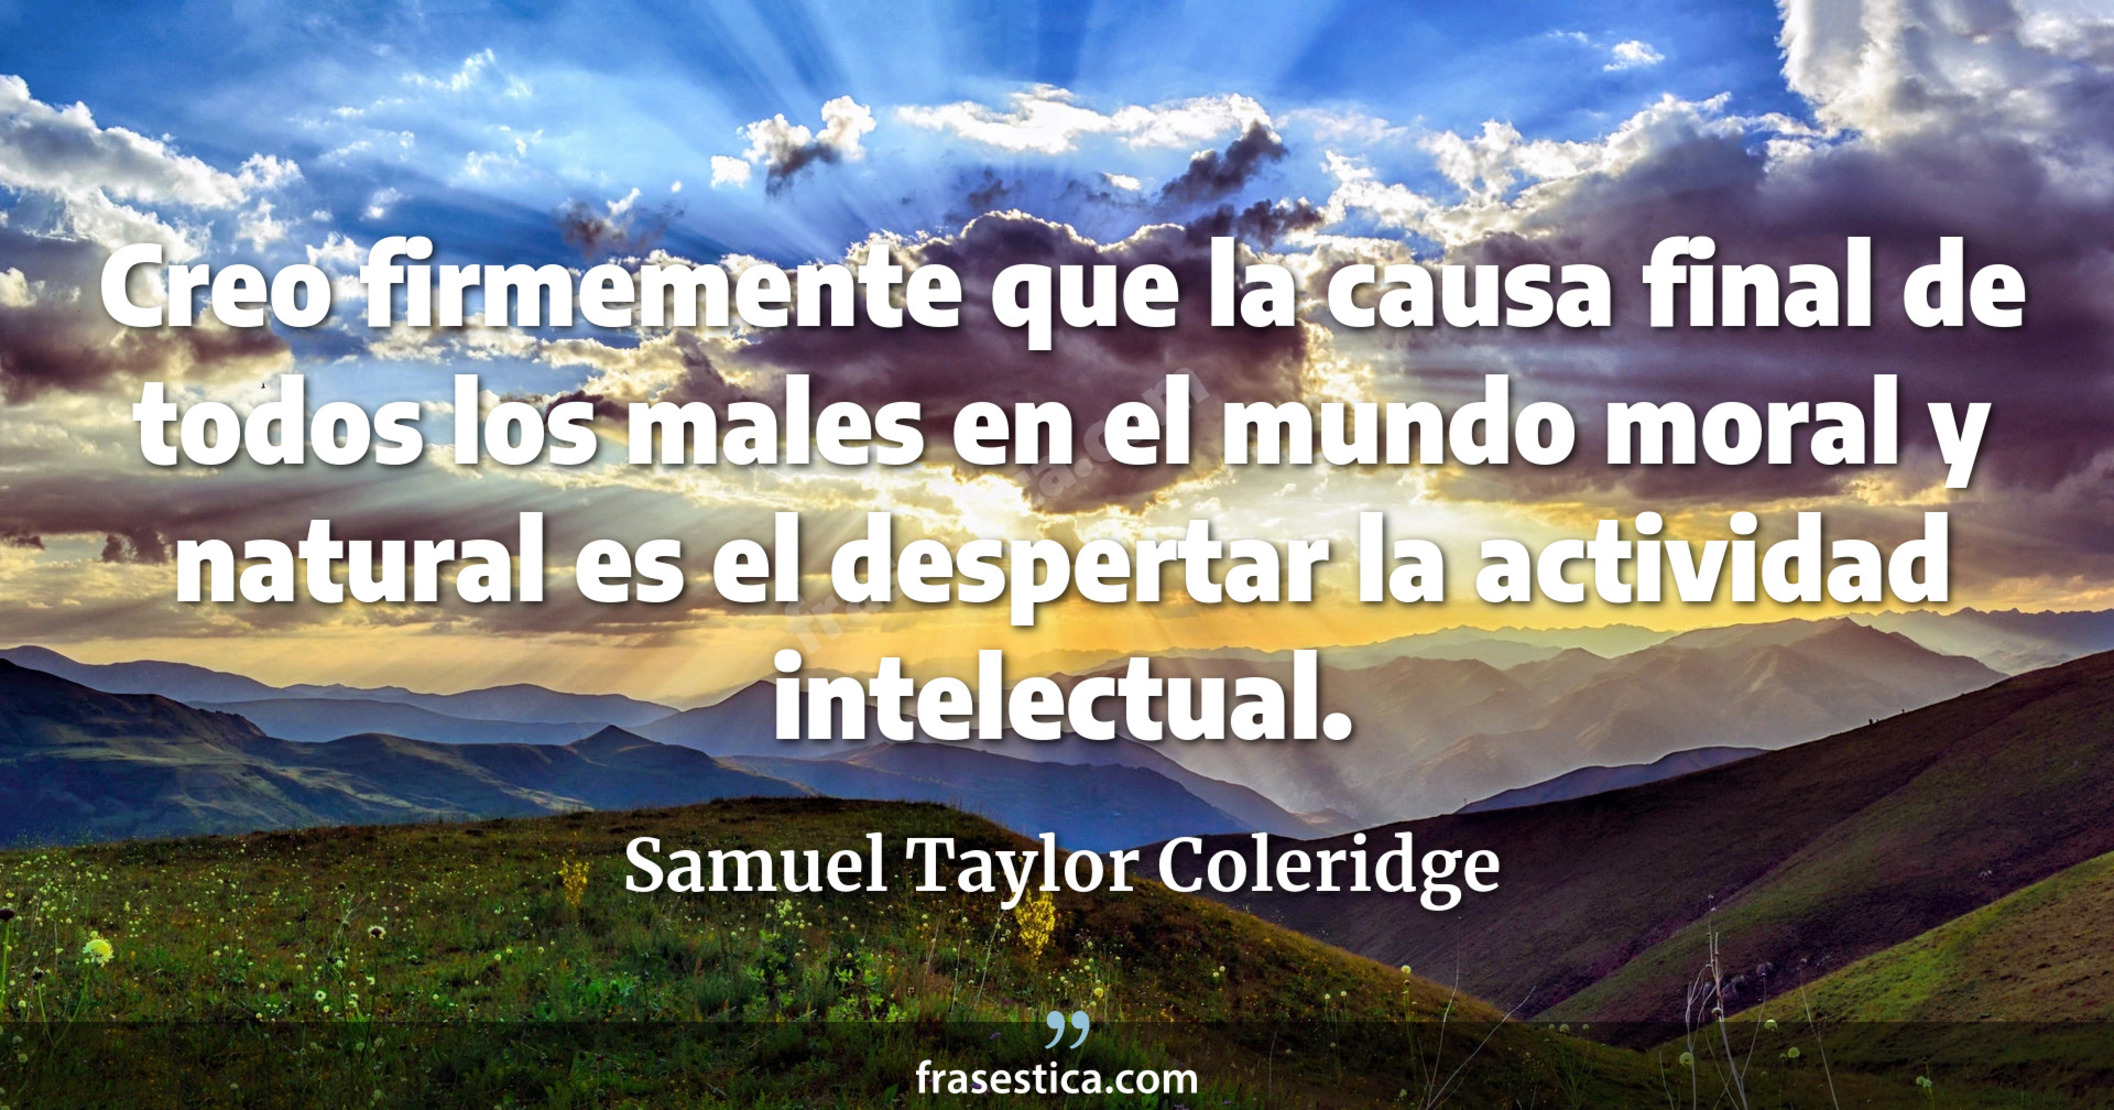 Creo firmemente que la causa final de todos los males en el mundo moral y natural es el despertar la actividad intelectual. - Samuel Taylor Coleridge